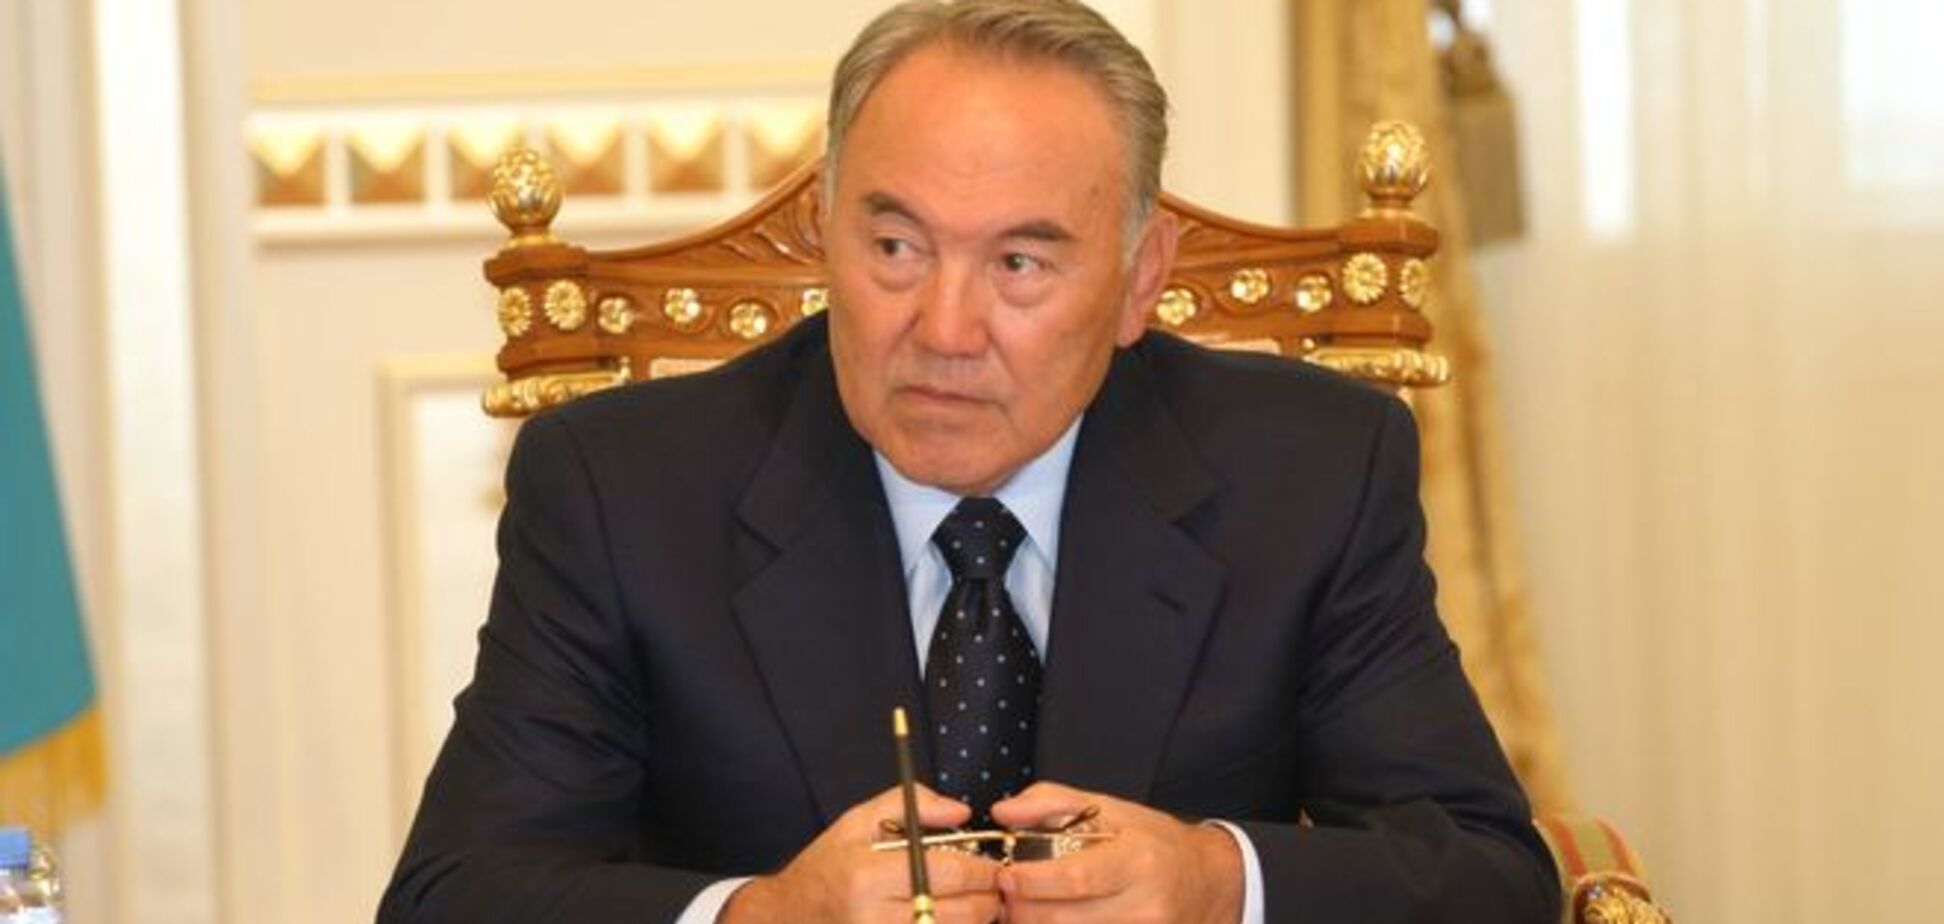 Победив на выборах, Назарбаев решил дилемму с участием в путинском параде 9 мая